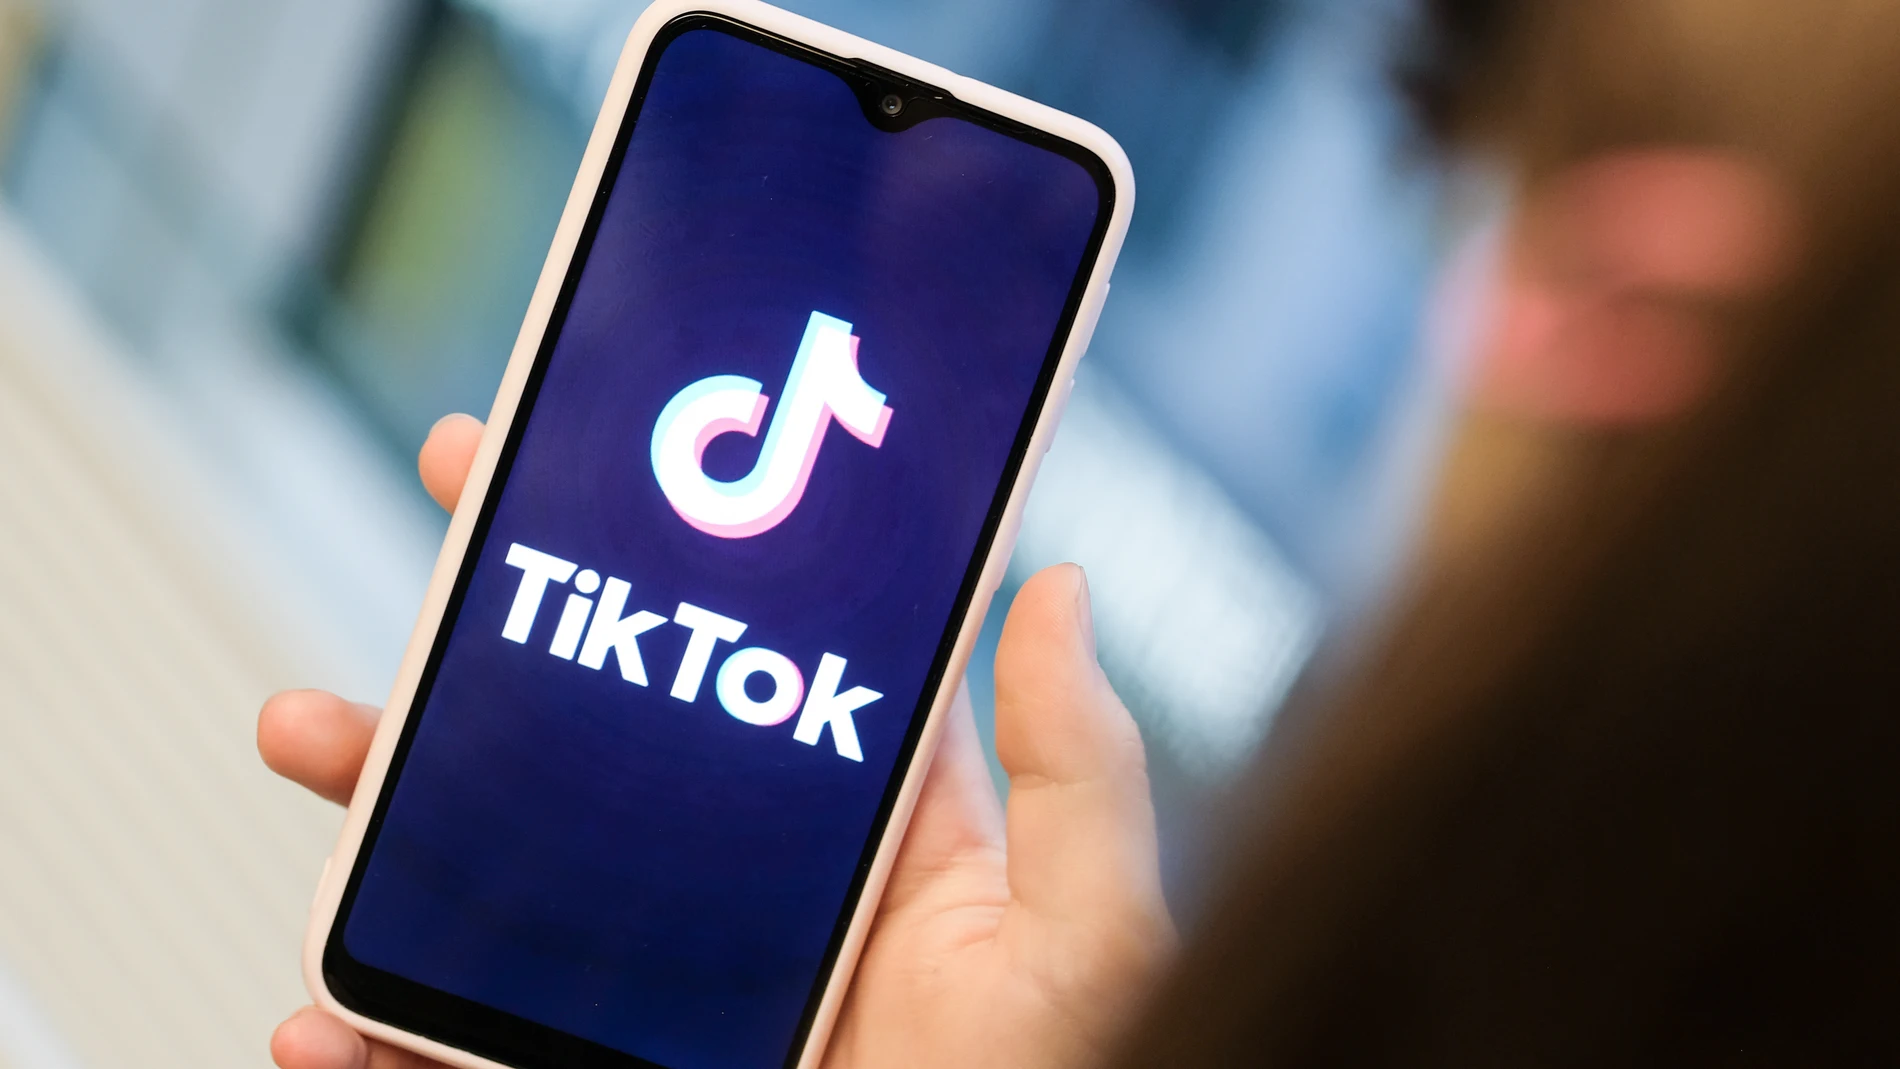 EEUU.- El gigante informático Oracle se asocia con TikTok para mantener su presencia en Estados Unidos